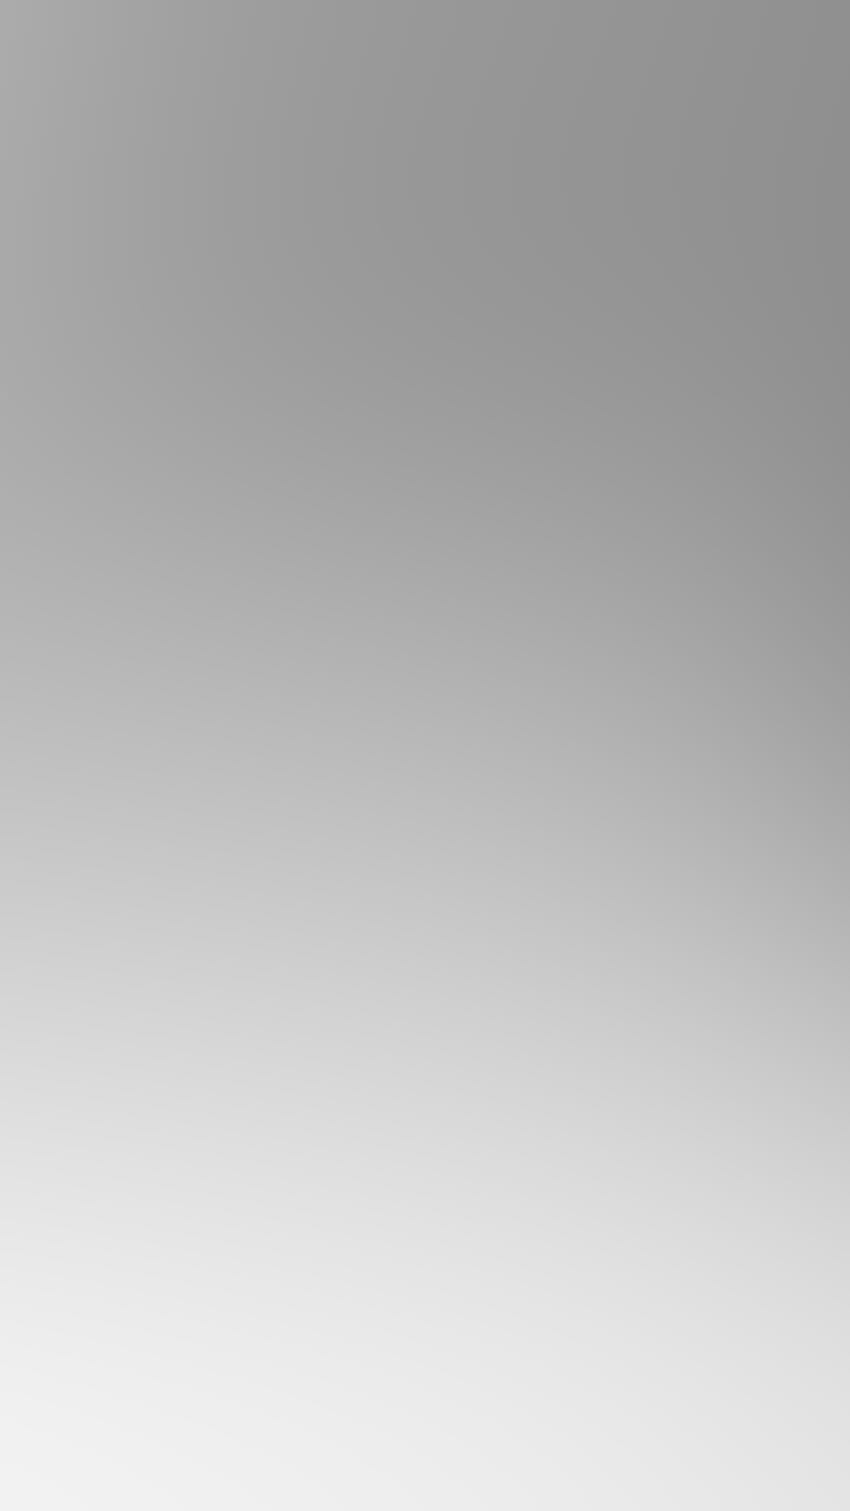 Blur Gradasi Abu-abu Putih, Buram Putih wallpaper ponsel HD